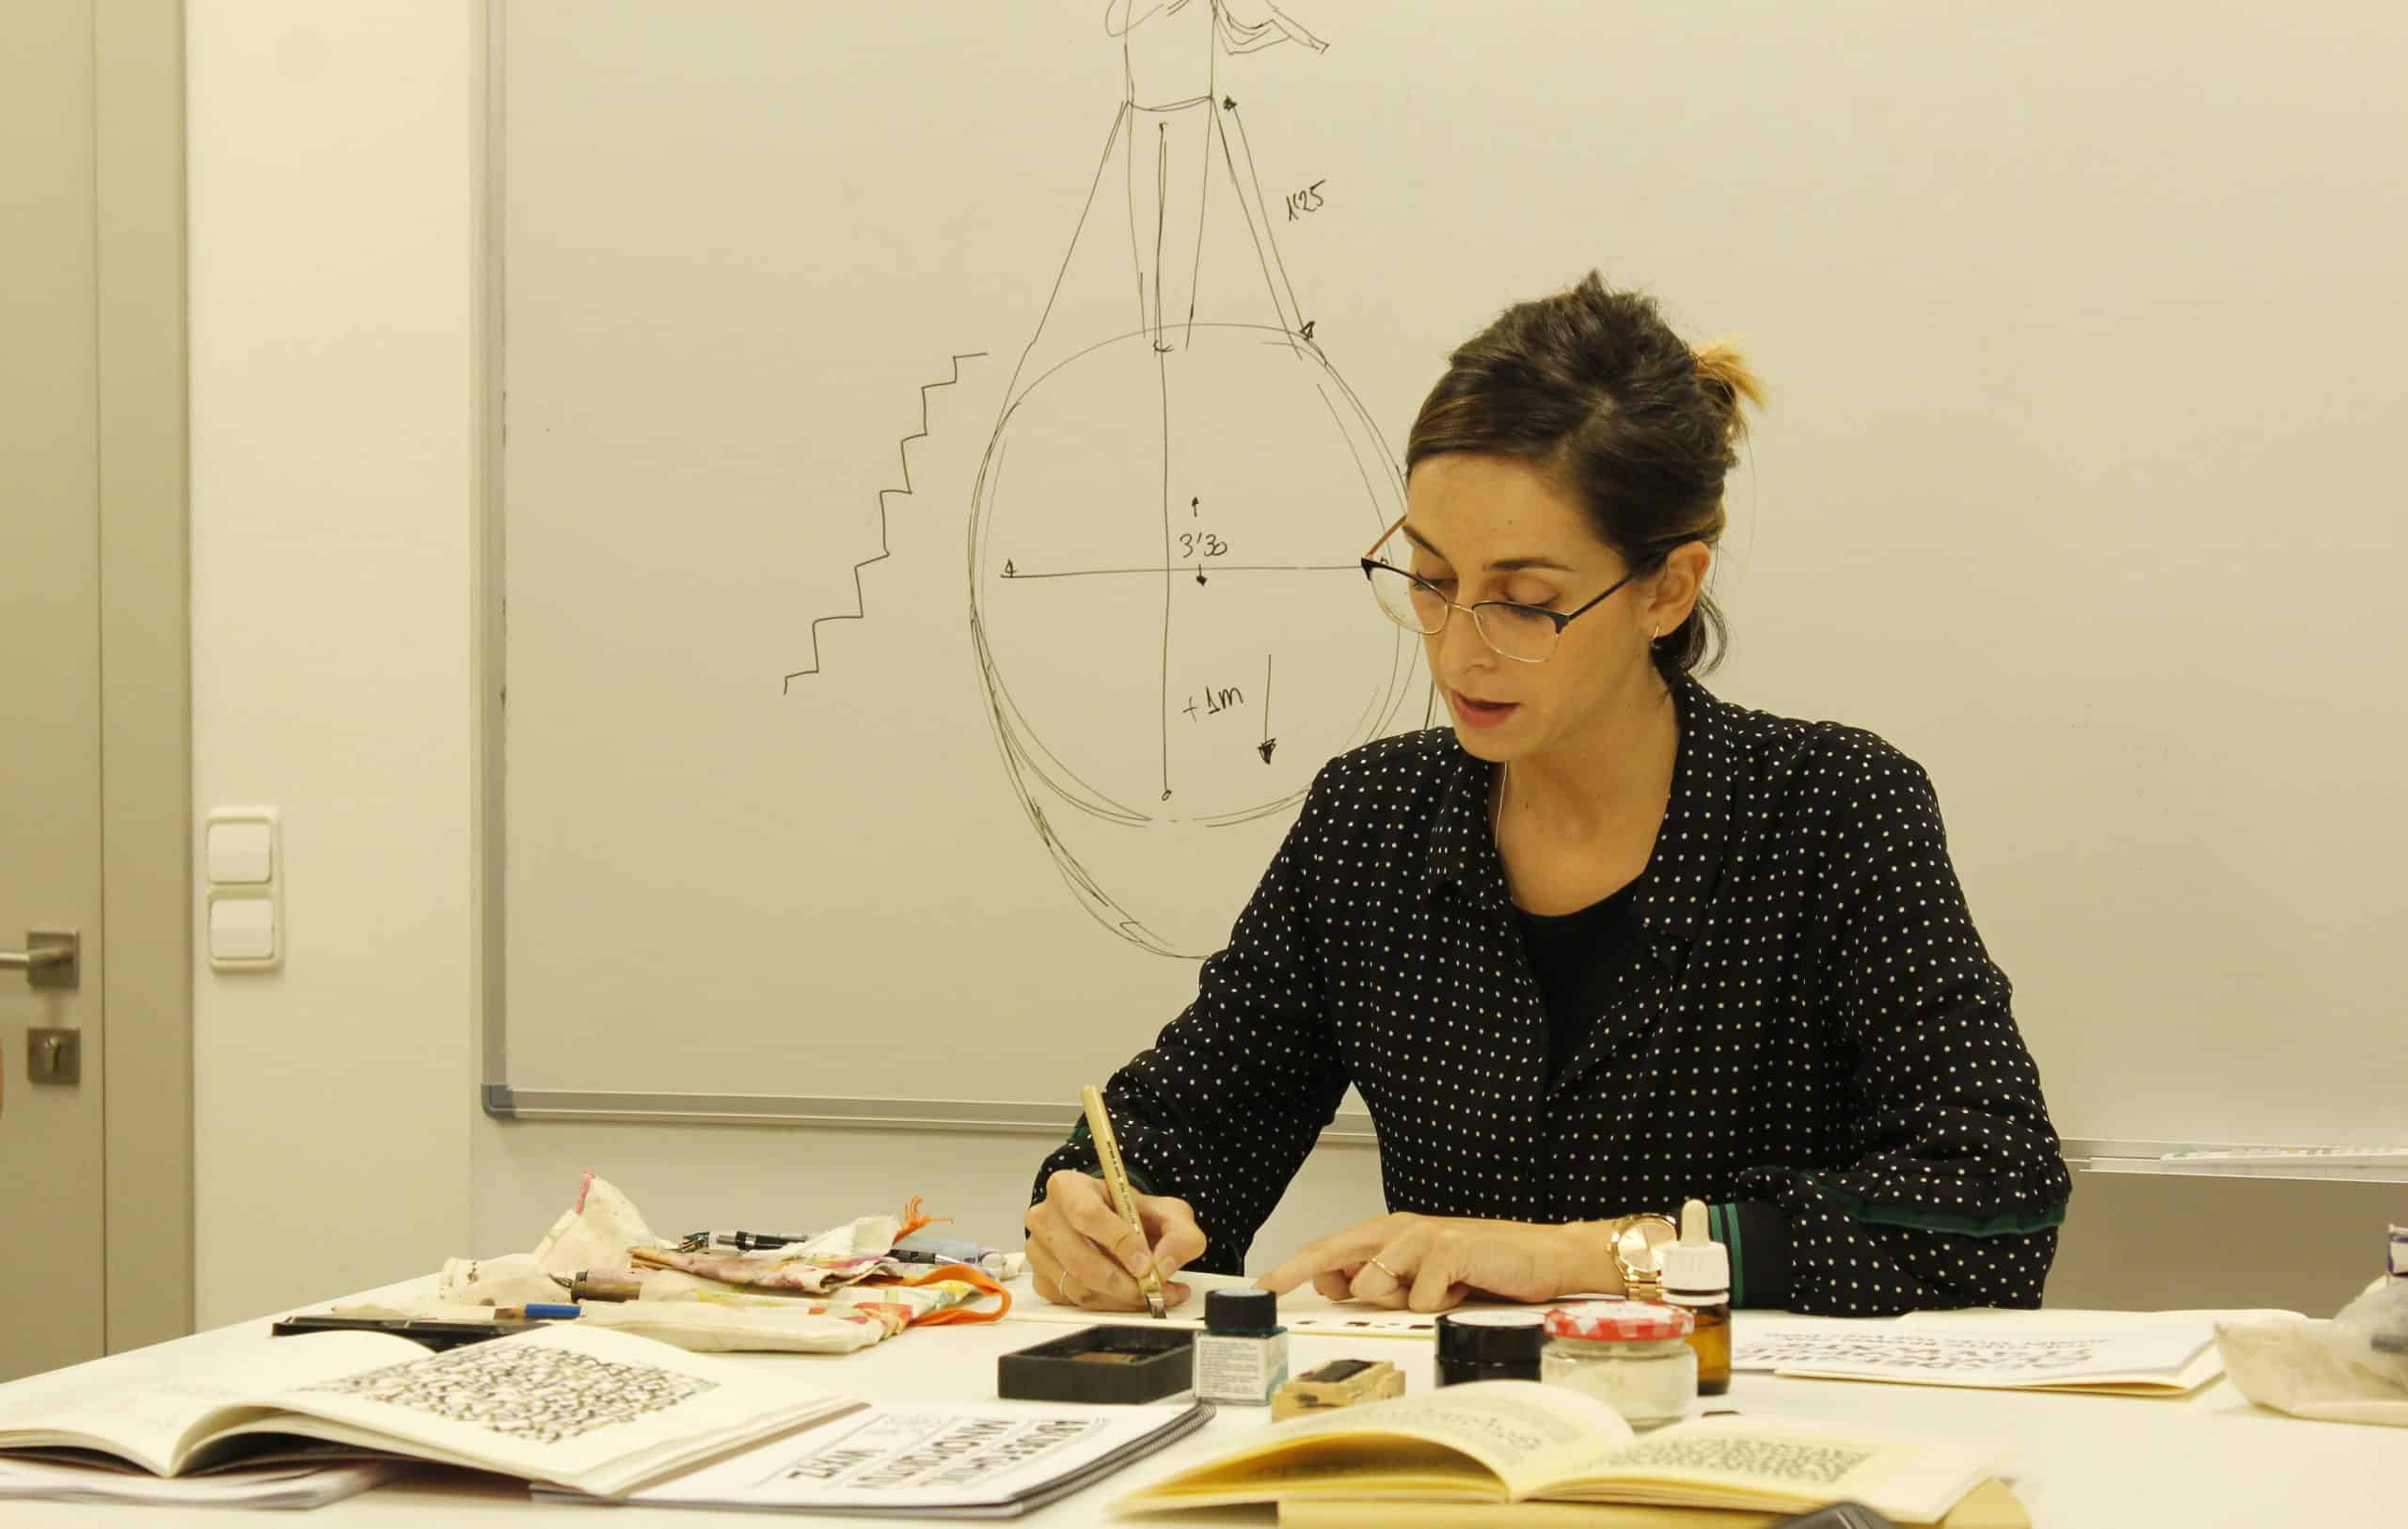 La experta en caligrafía, Bego Viñuela, imparte una Master Class a estudiantes de Diseño Gráfico | BEGO4